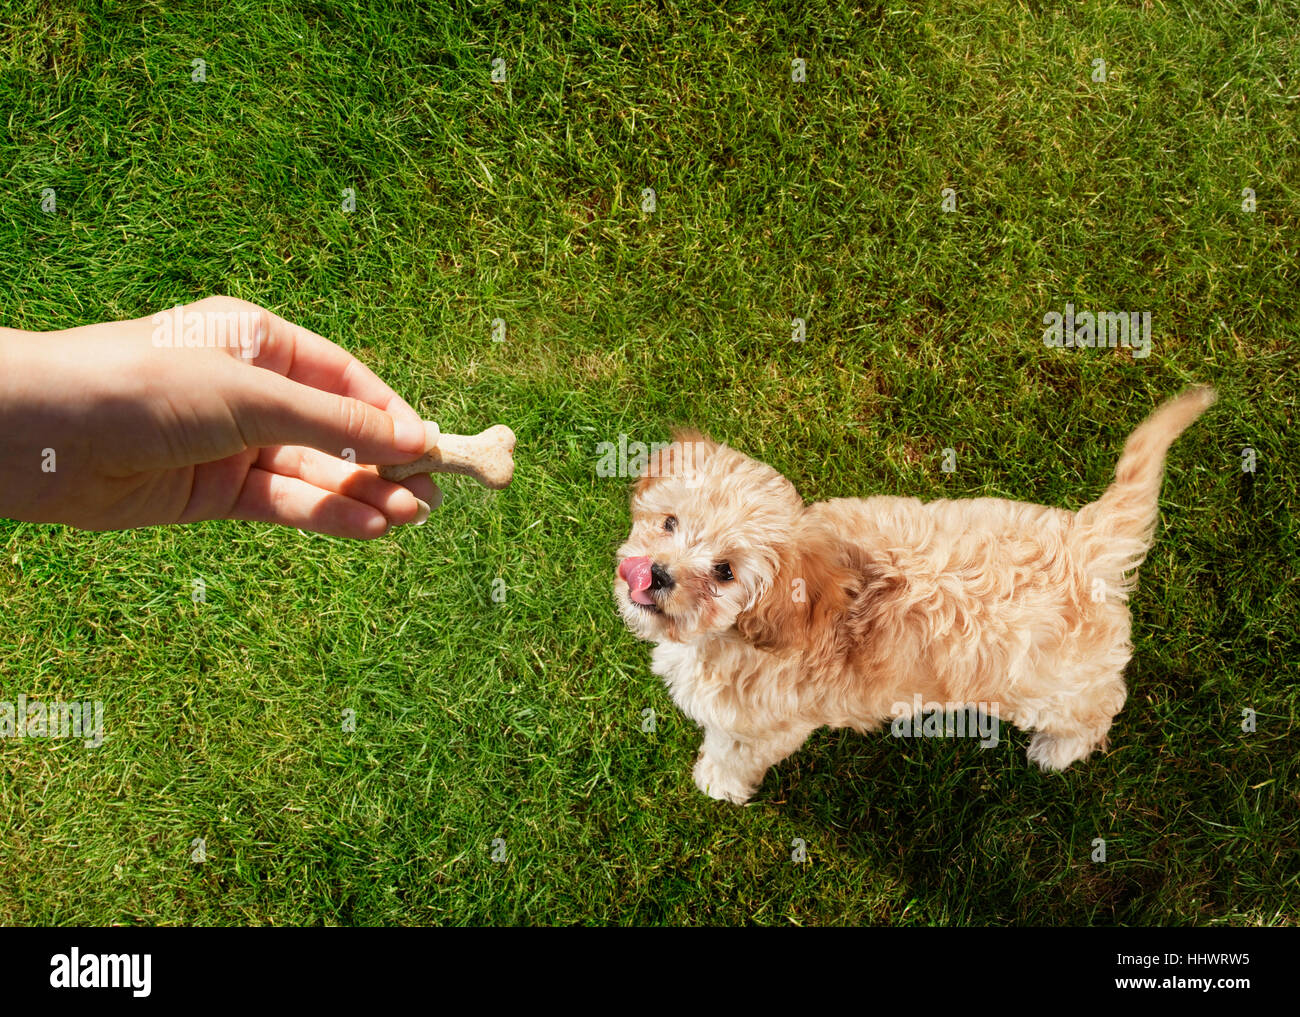 Point de vue personnel holding propriétaire de l'animal chien traiter plus de lécher les lèvres dans l'herbe Banque D'Images